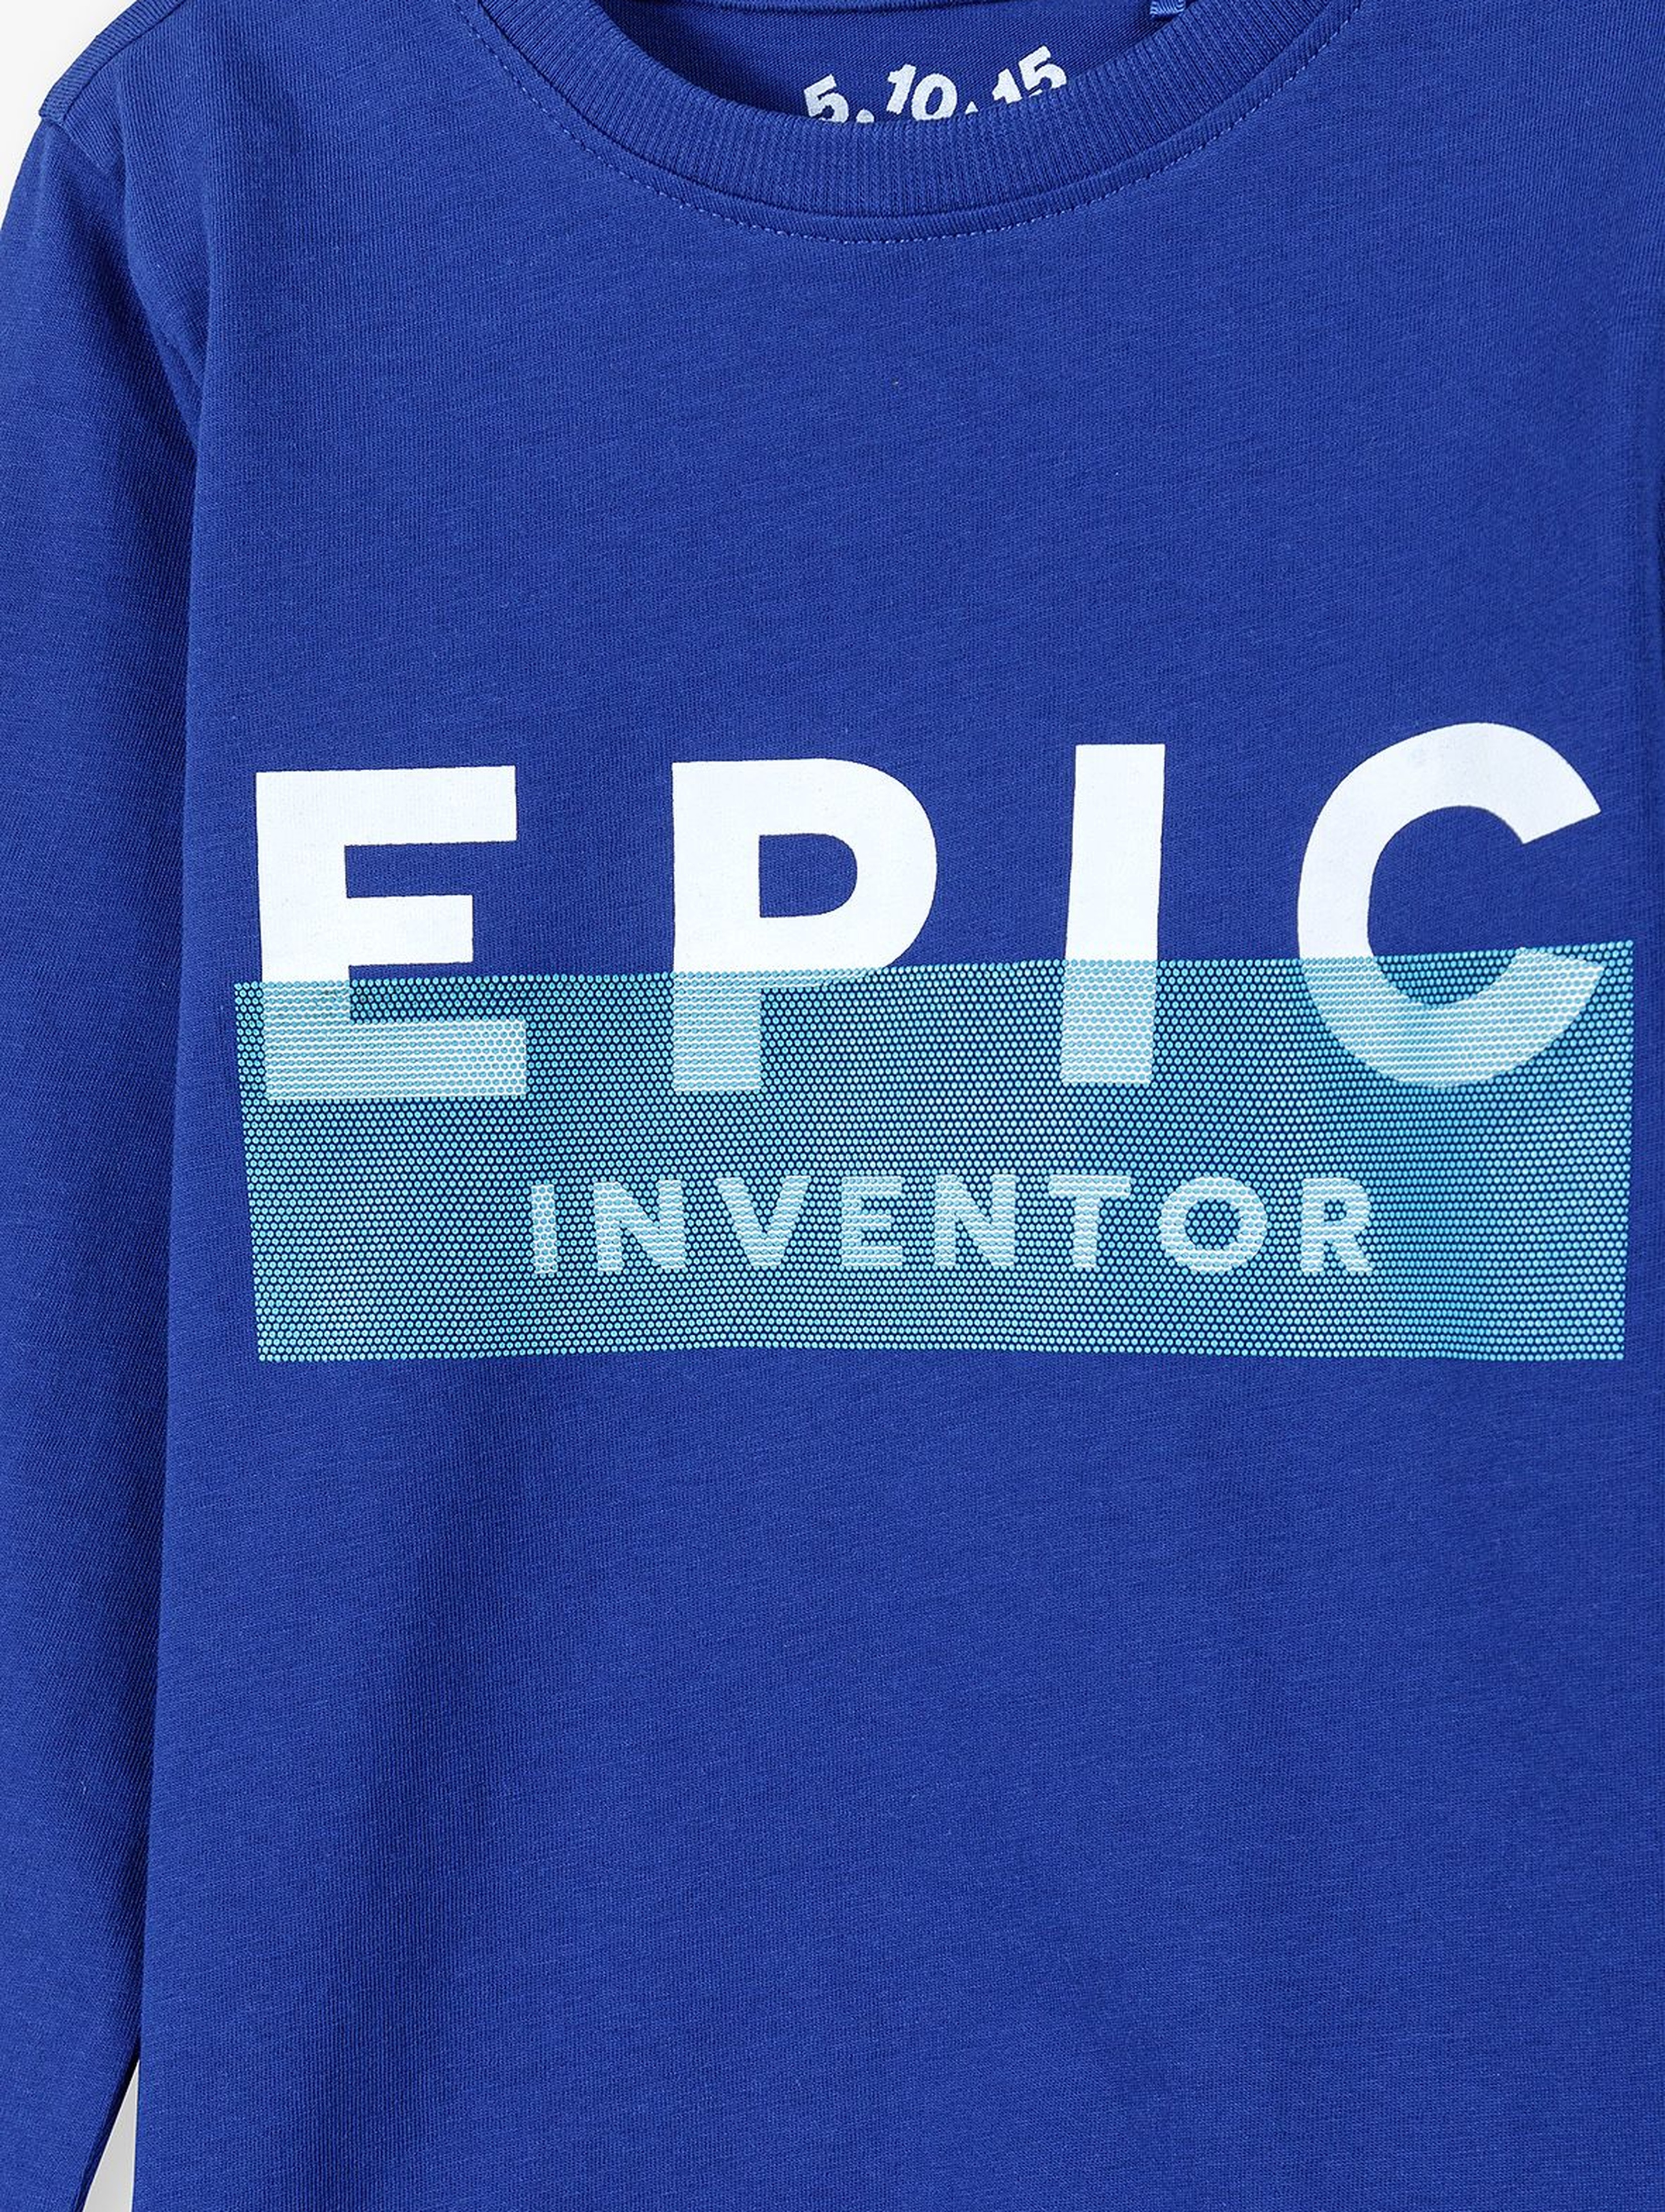 Bawełniana bluzka chłopięca z napisem - EPIC INVENTOR